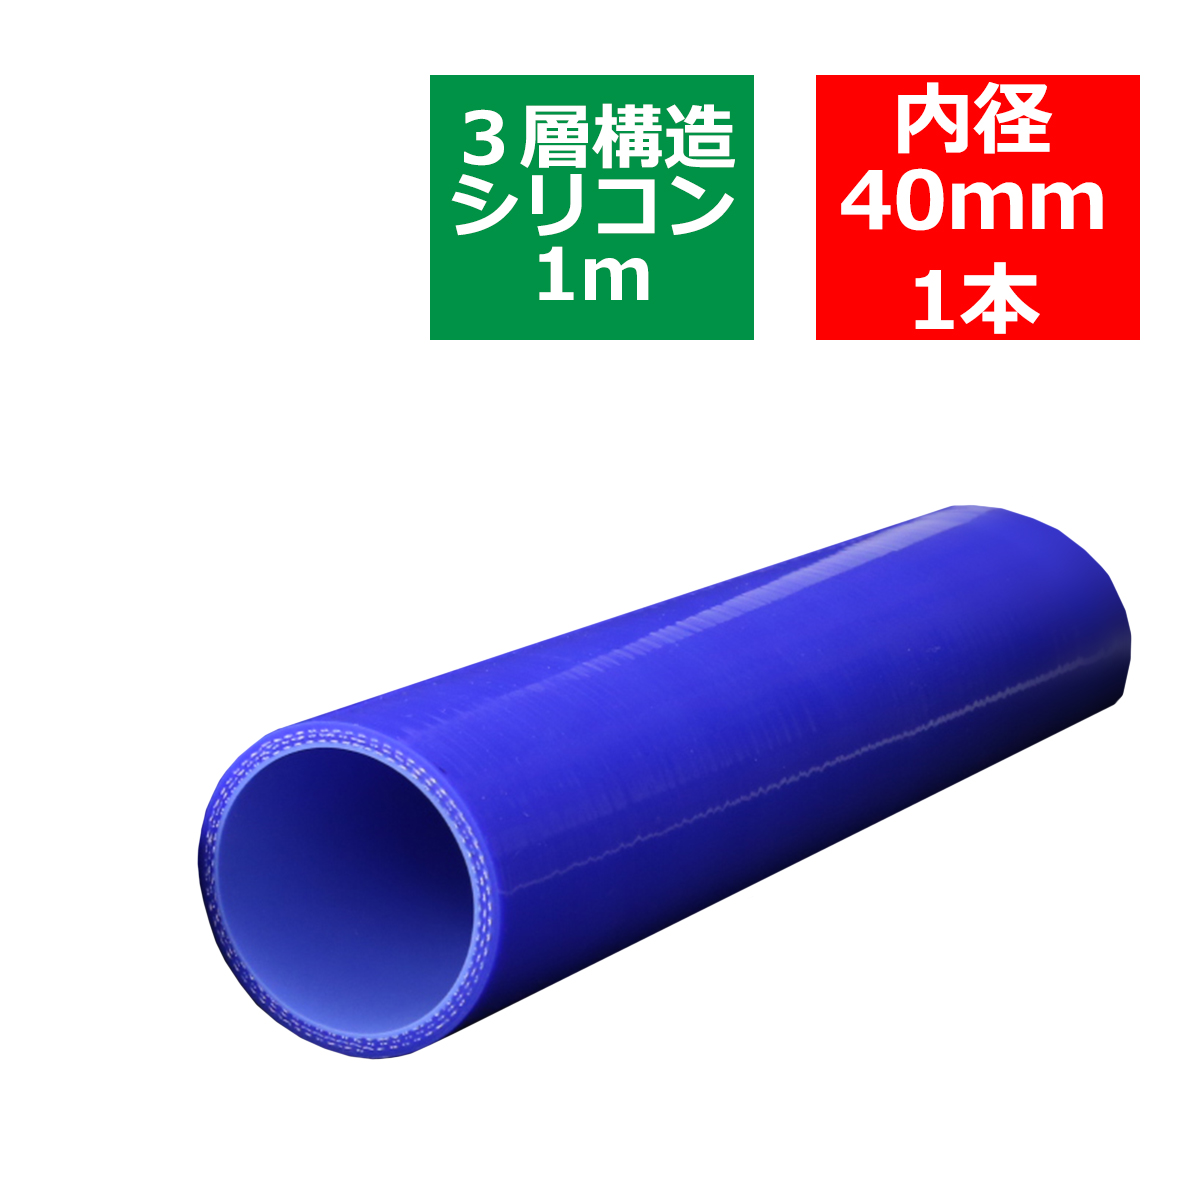 汎用シリコンホース 1m長尺ストレート 内径 40Φ 40mm ブルー 3層構造 SL016